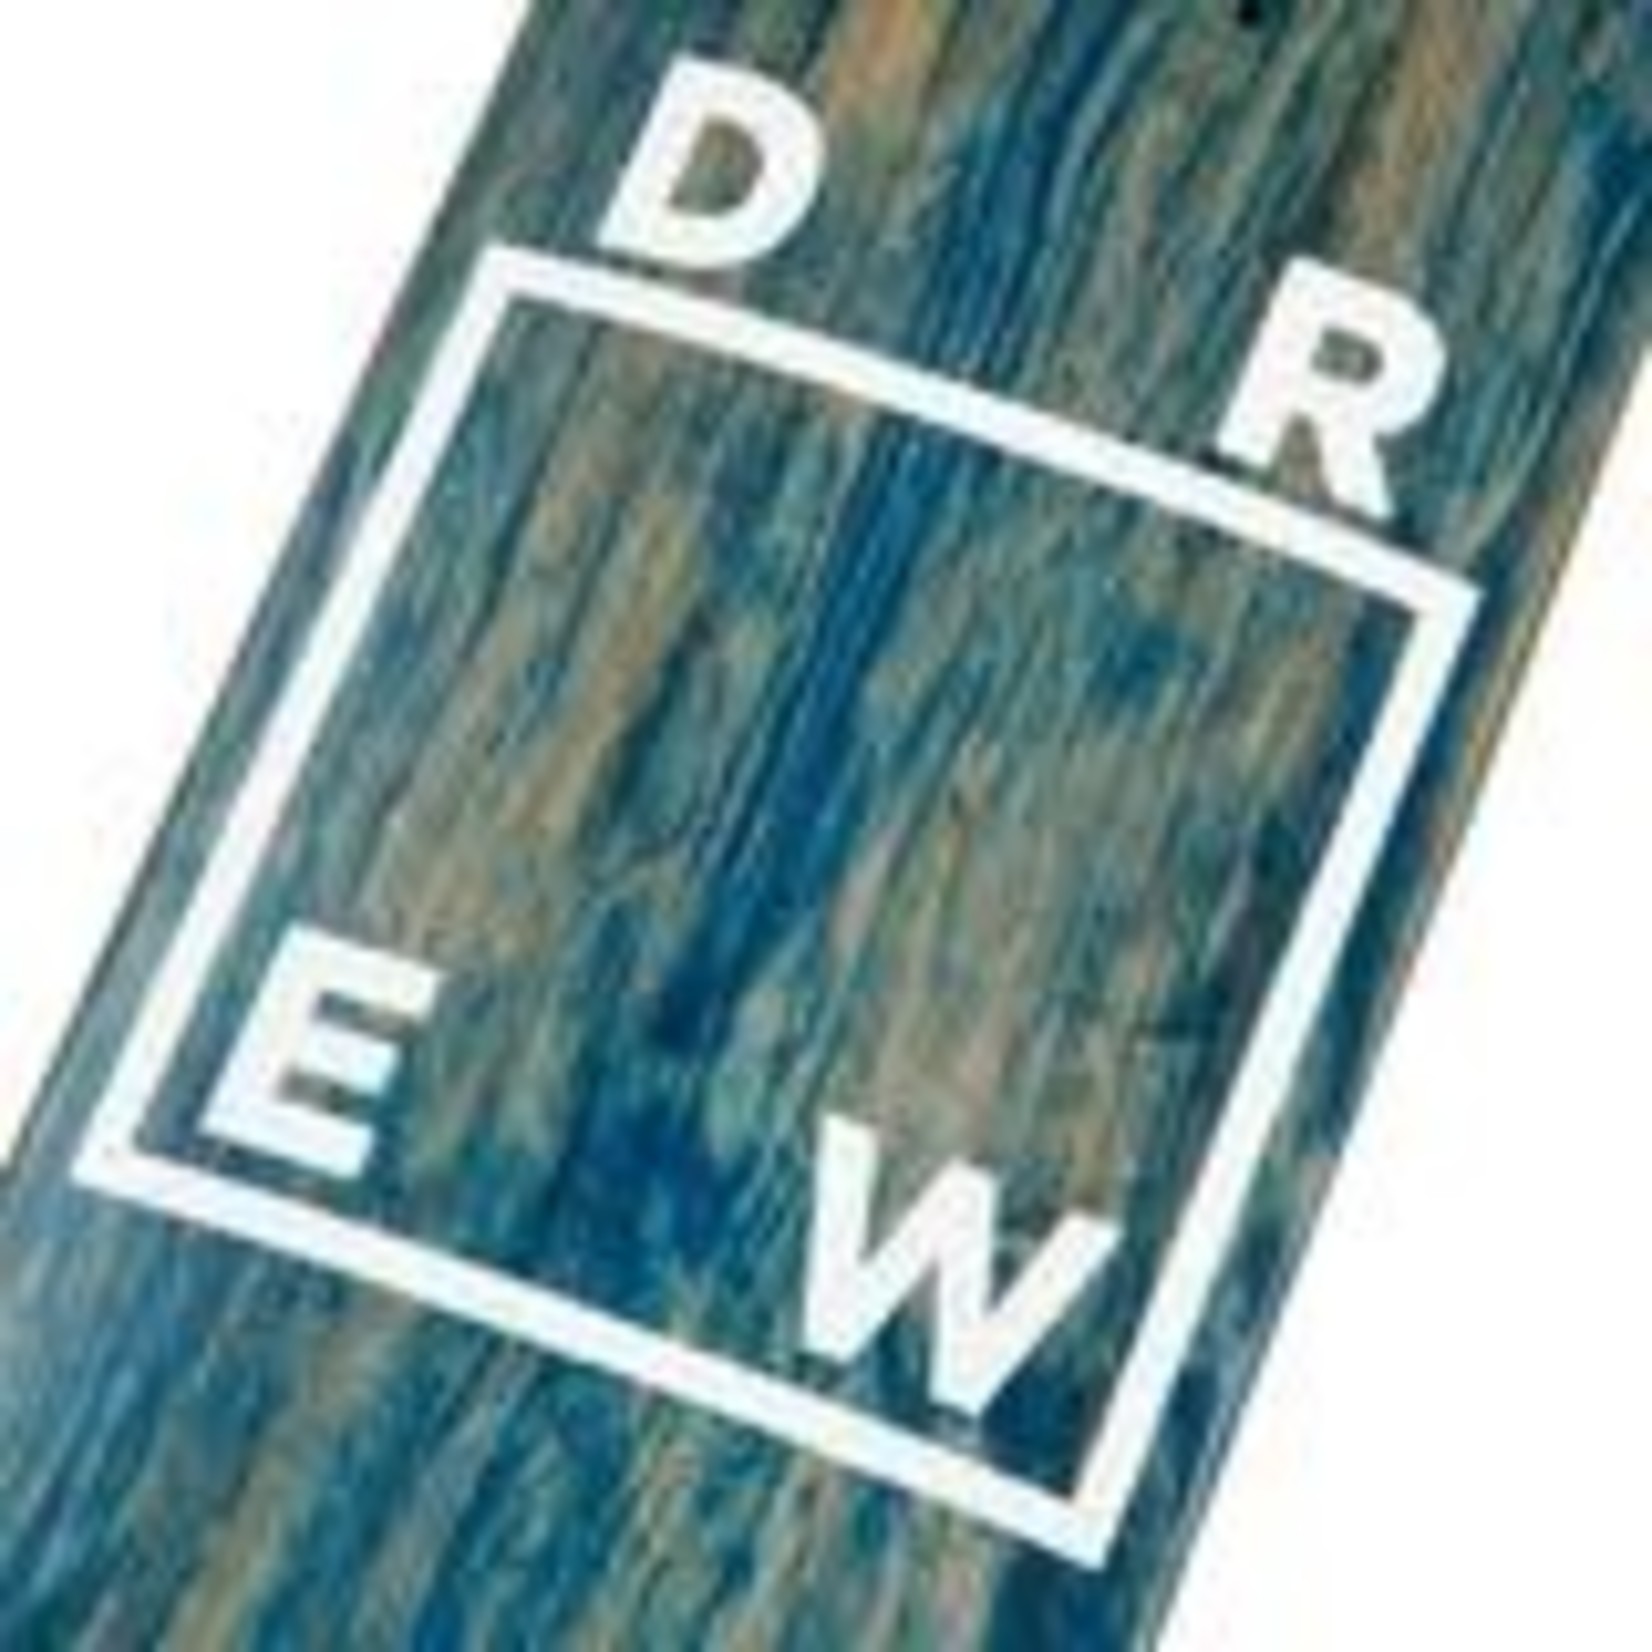 WKND WKND “DREW” Logo Deck 8.5”